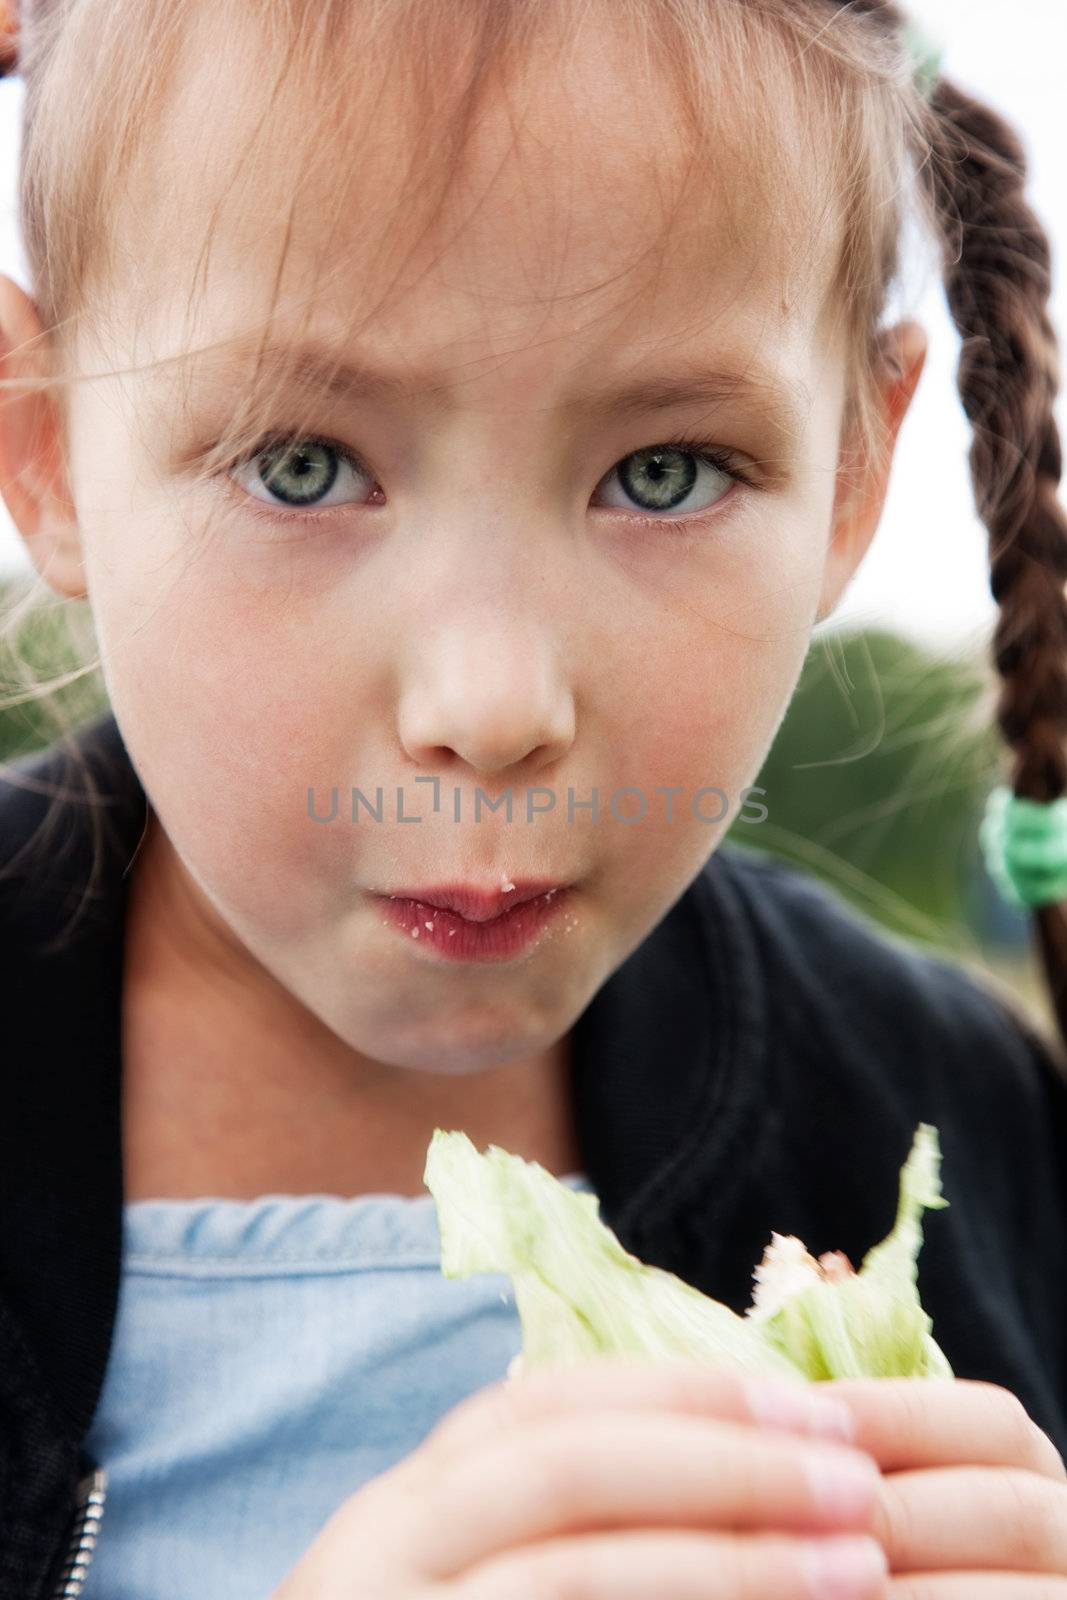 Little girl eats a sandwich
